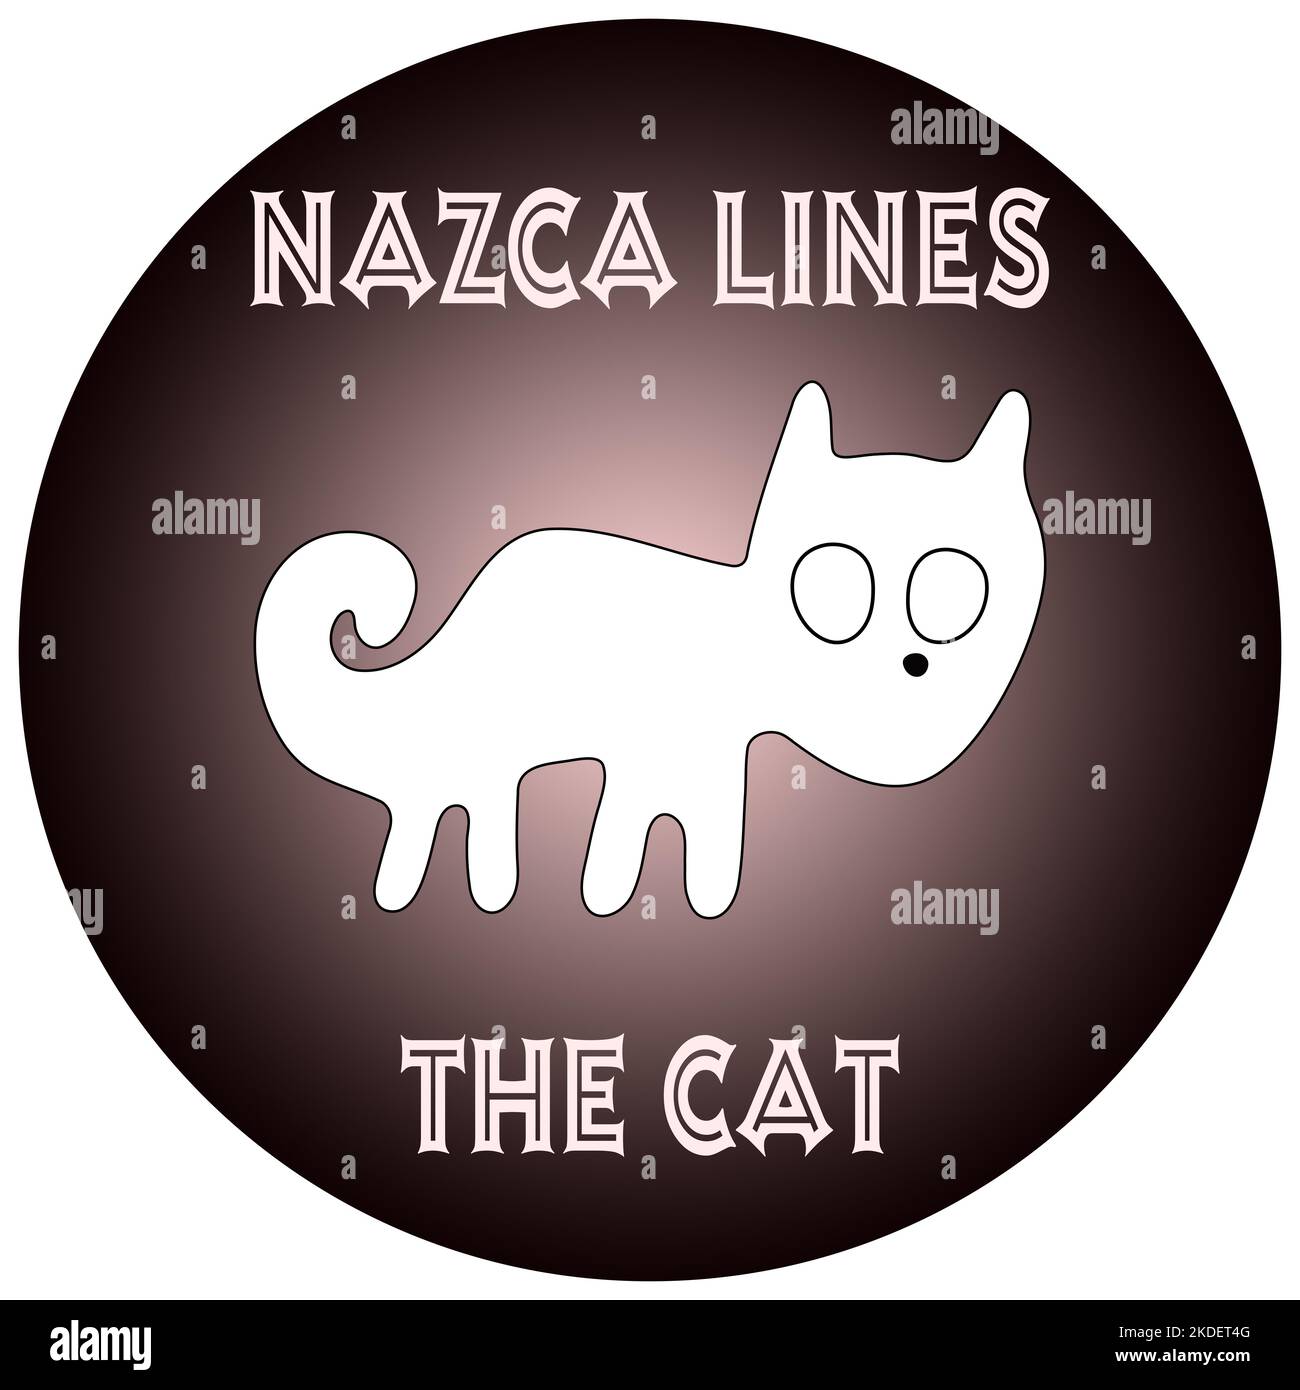 Geoglyphe du chat de Nazca, les lignes de Nazca, désert de Nazca, Pérou Banque D'Images